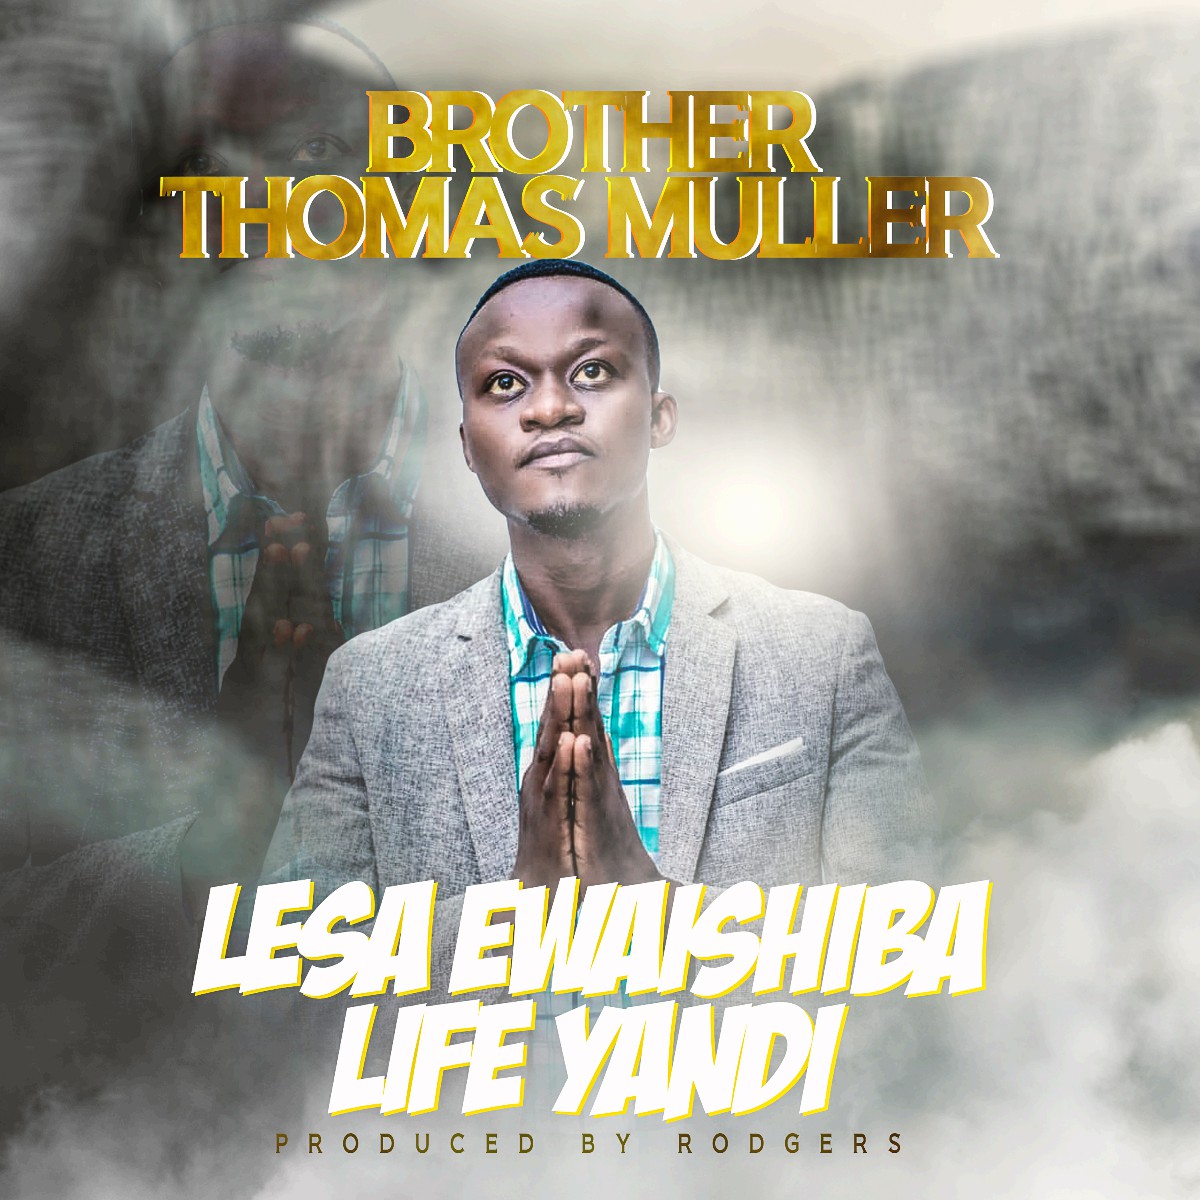 Brother Thomas Muller - Lesa Ewaishiba Life Yandi